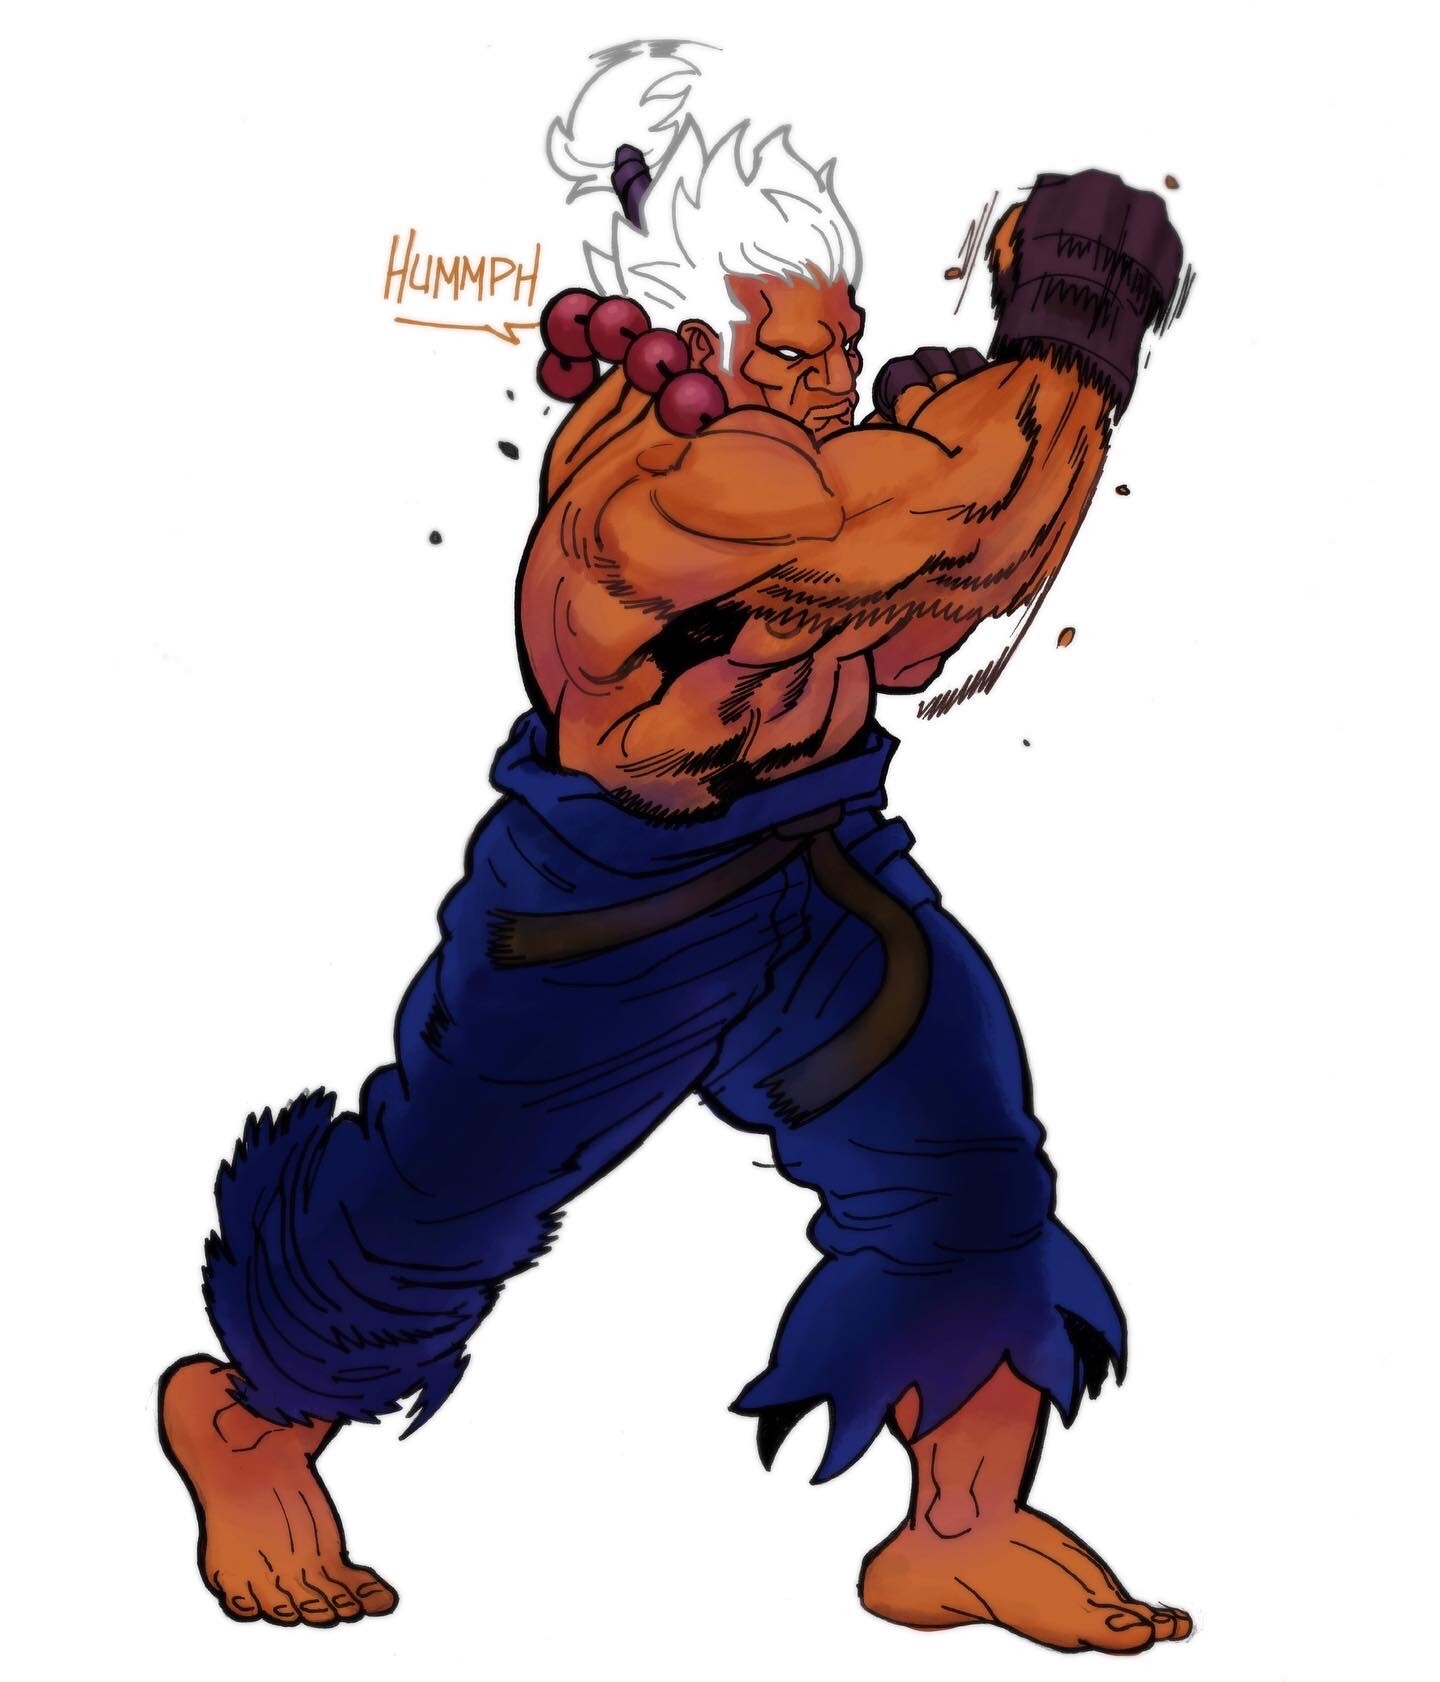 Shin Akuma (Street Fighter)